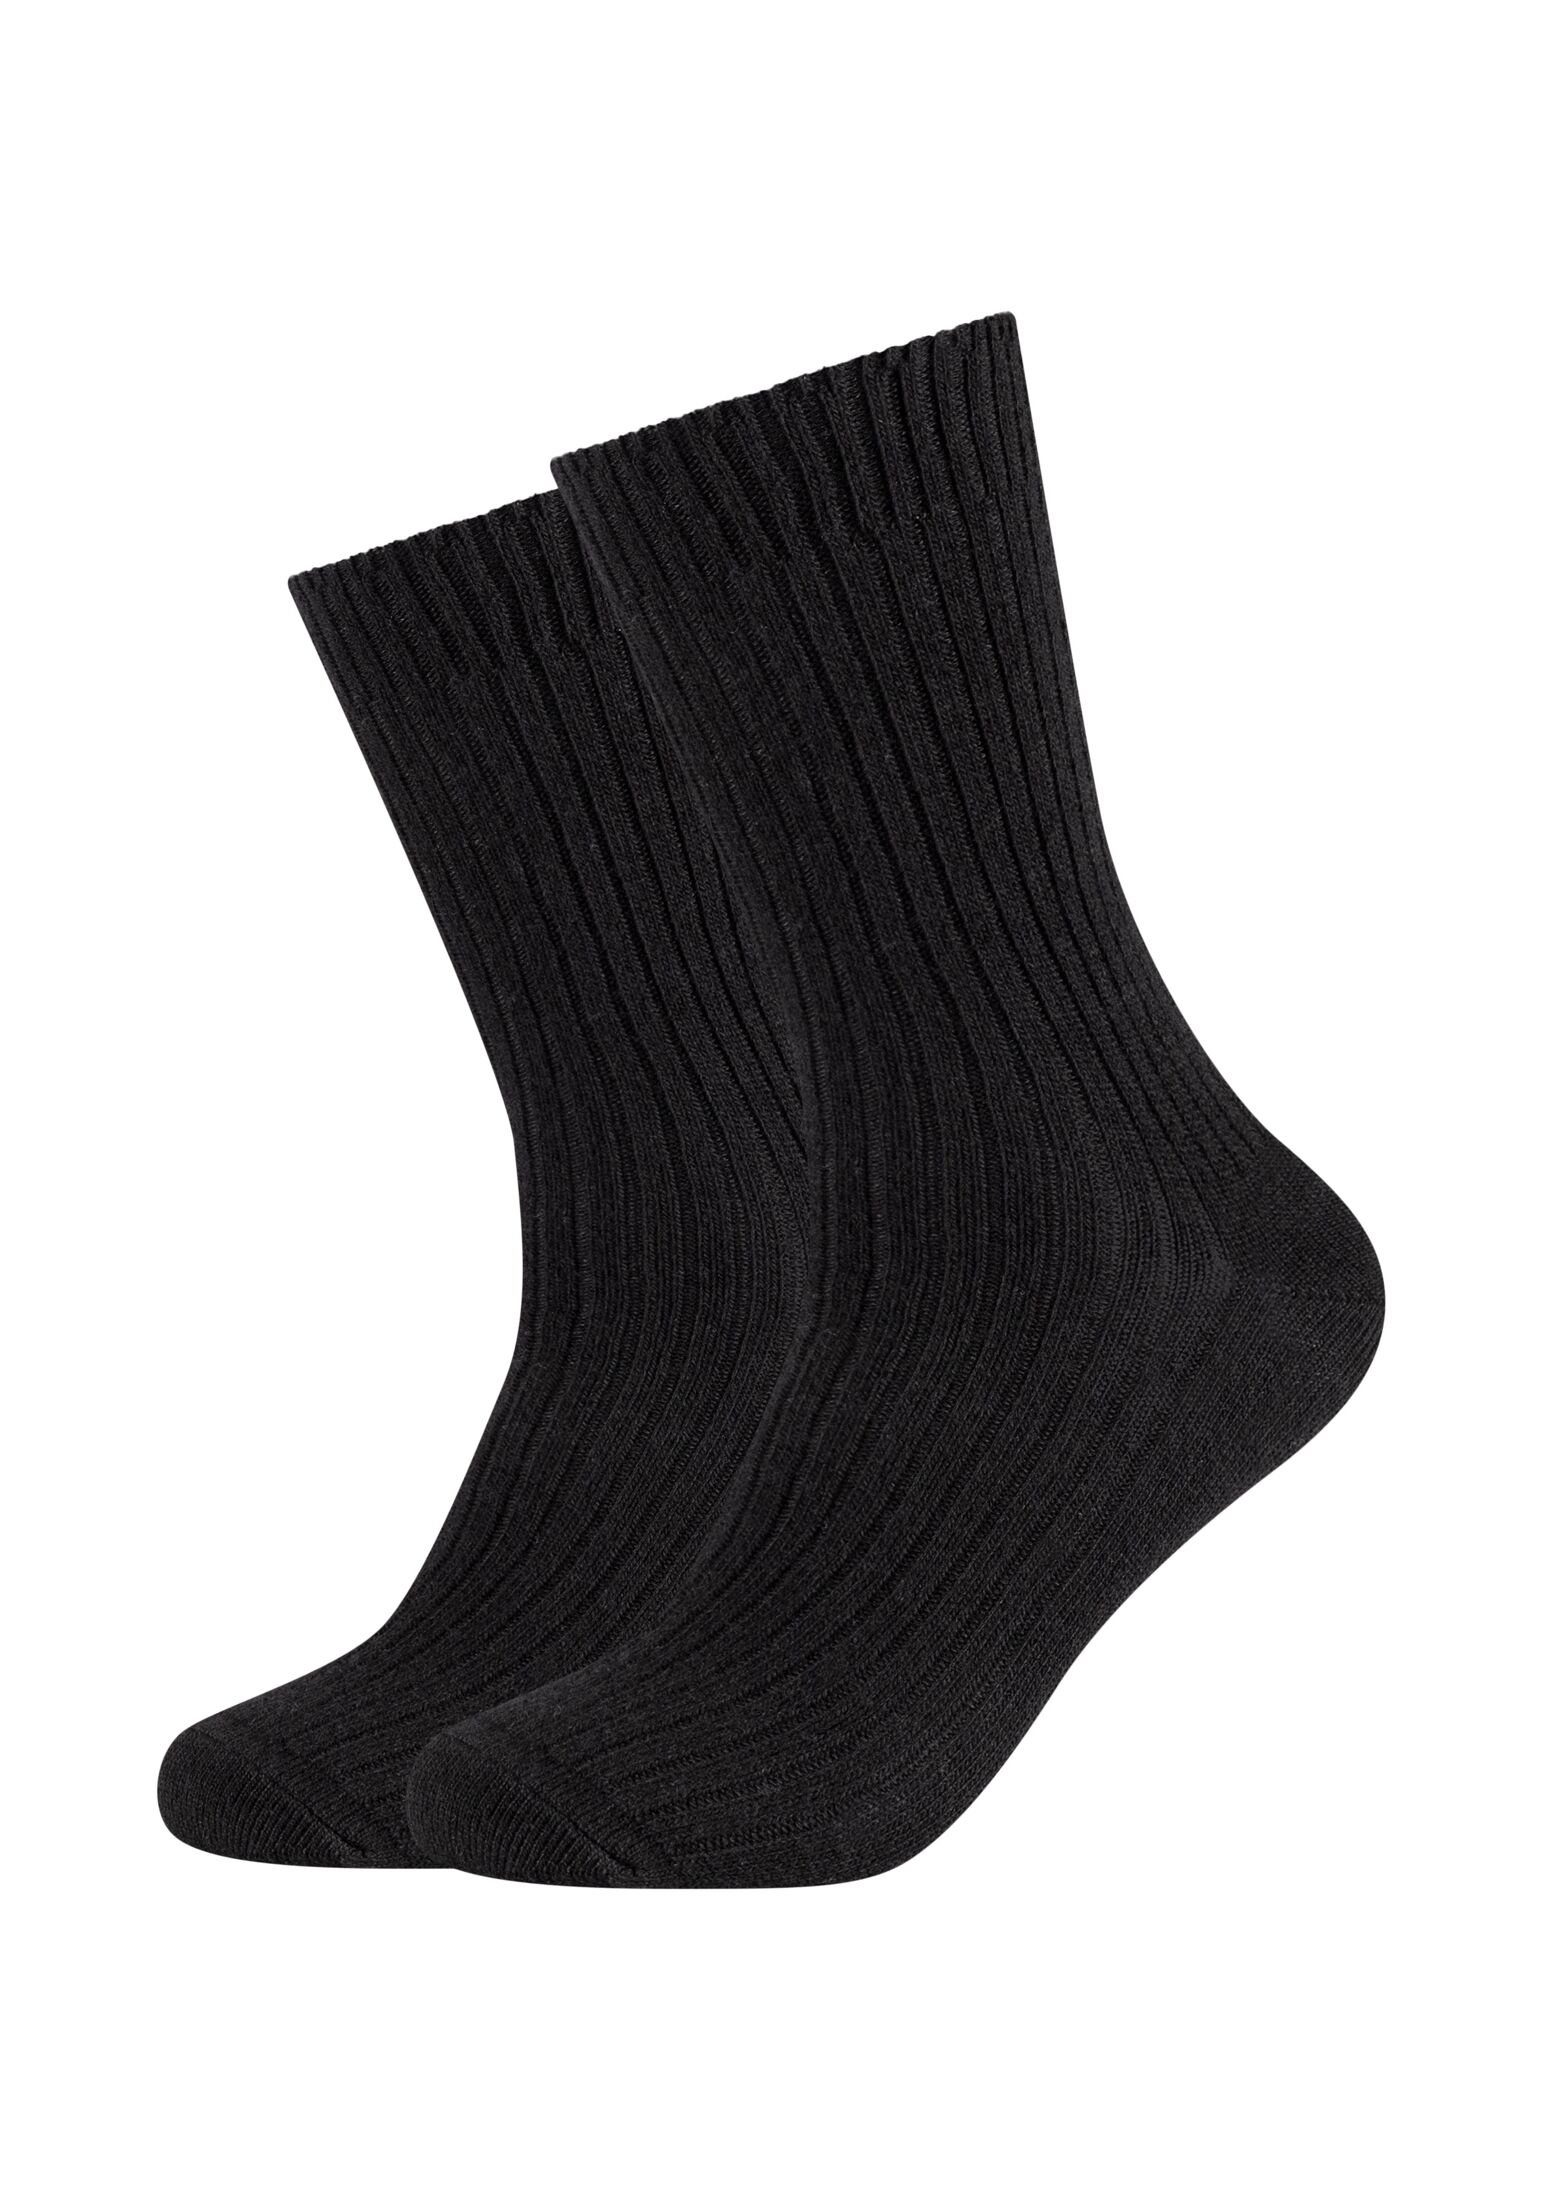 s.Oliver Socken Socken 2er Pack black